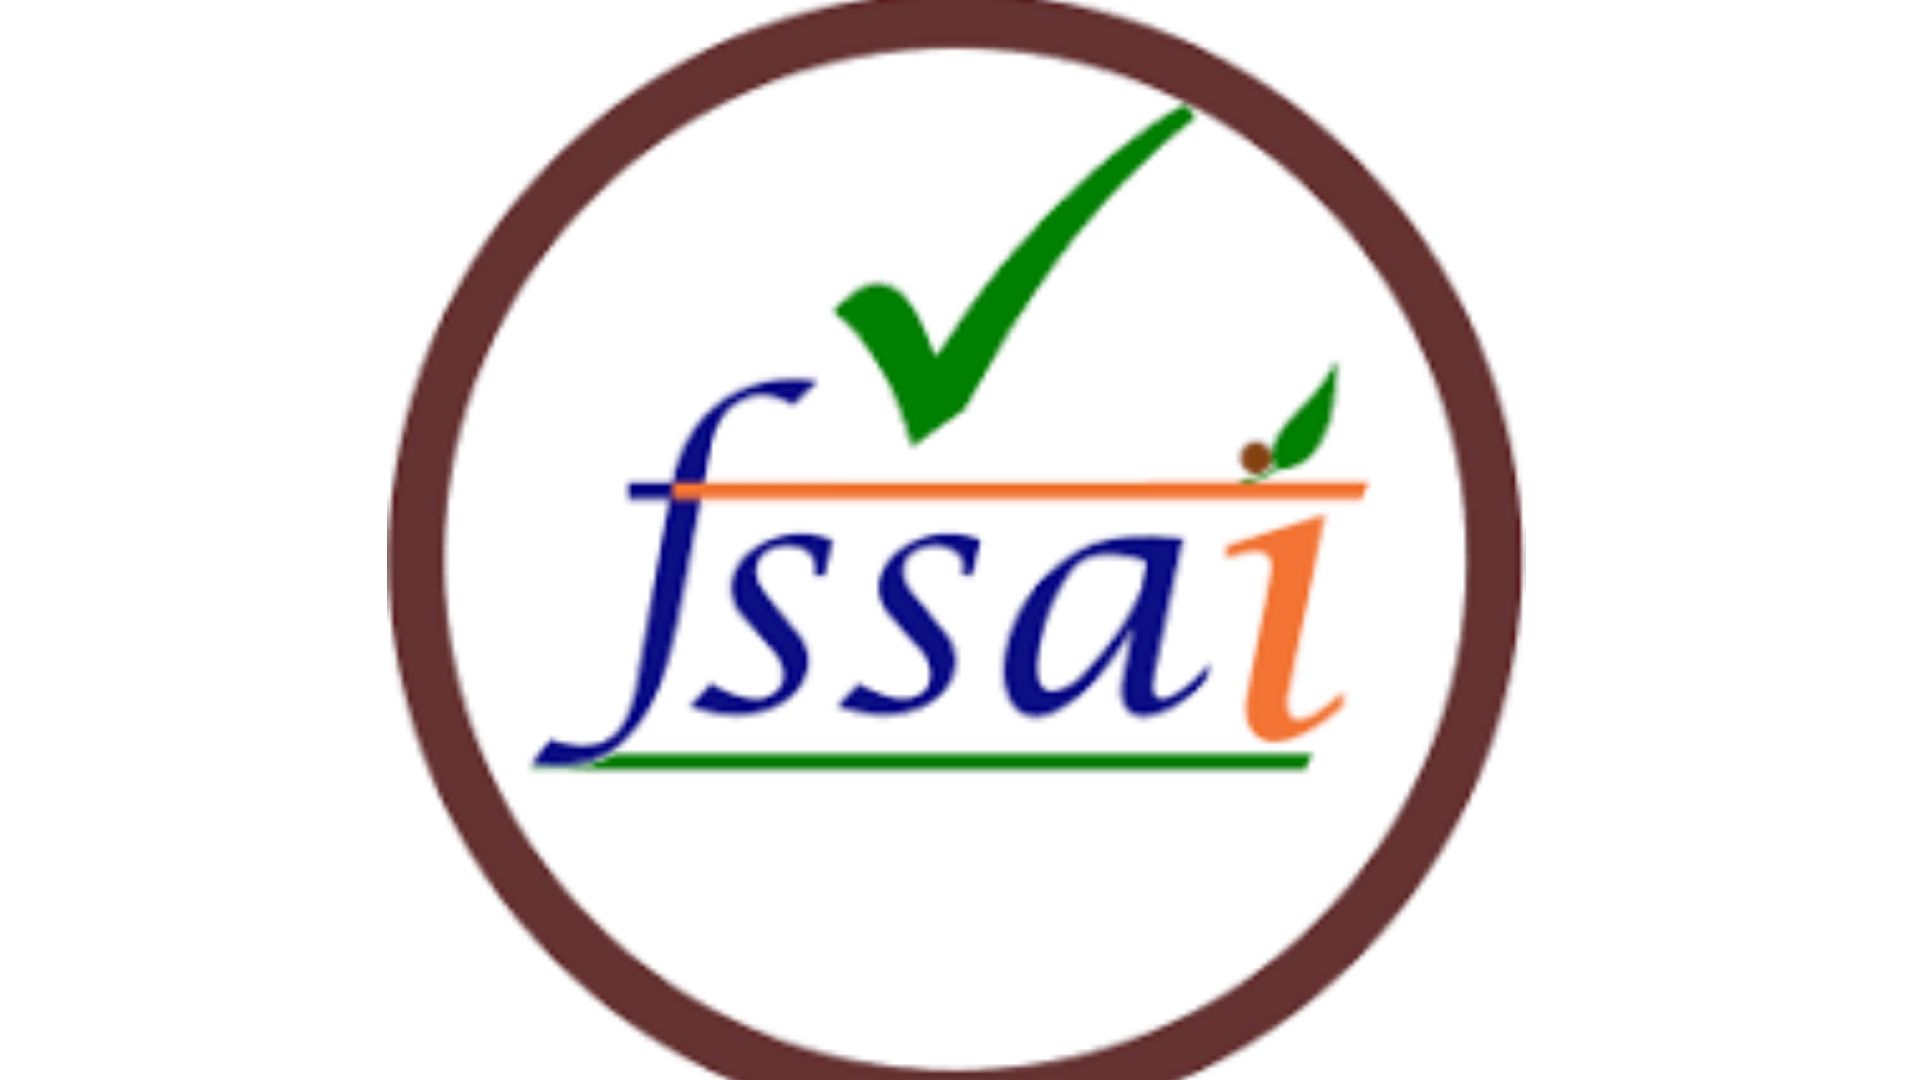 FSSAI certificate